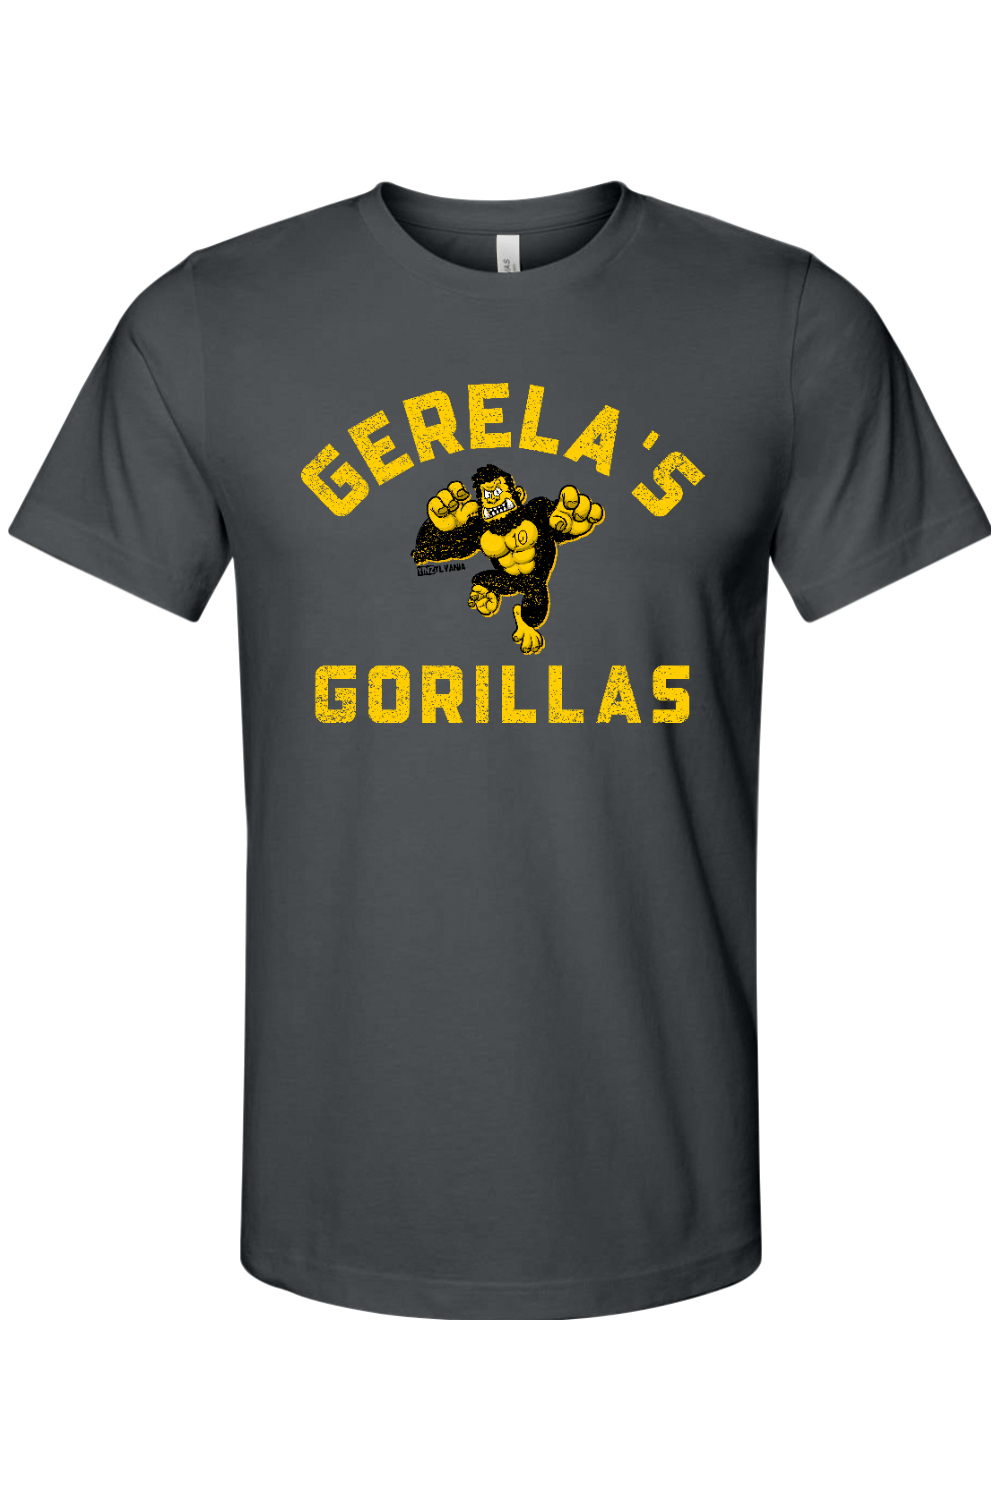 Gerela's Gorillas - Bella + Canvas Jersey Tee - Yinzylvania